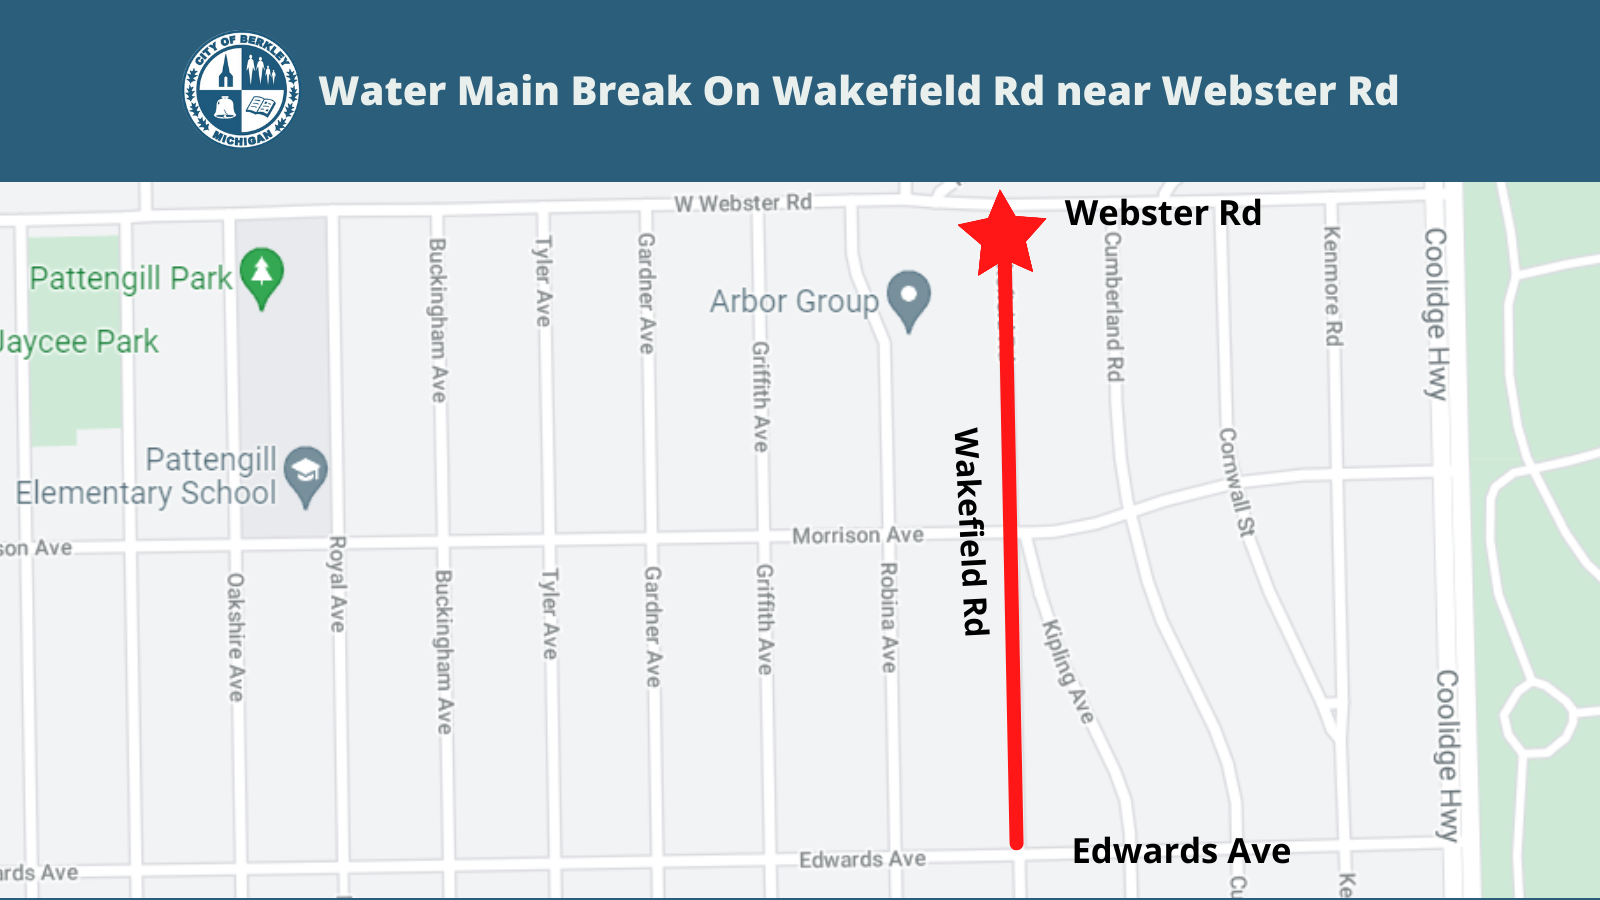 Water Main Break On Wakefield Rd near Webster Rd